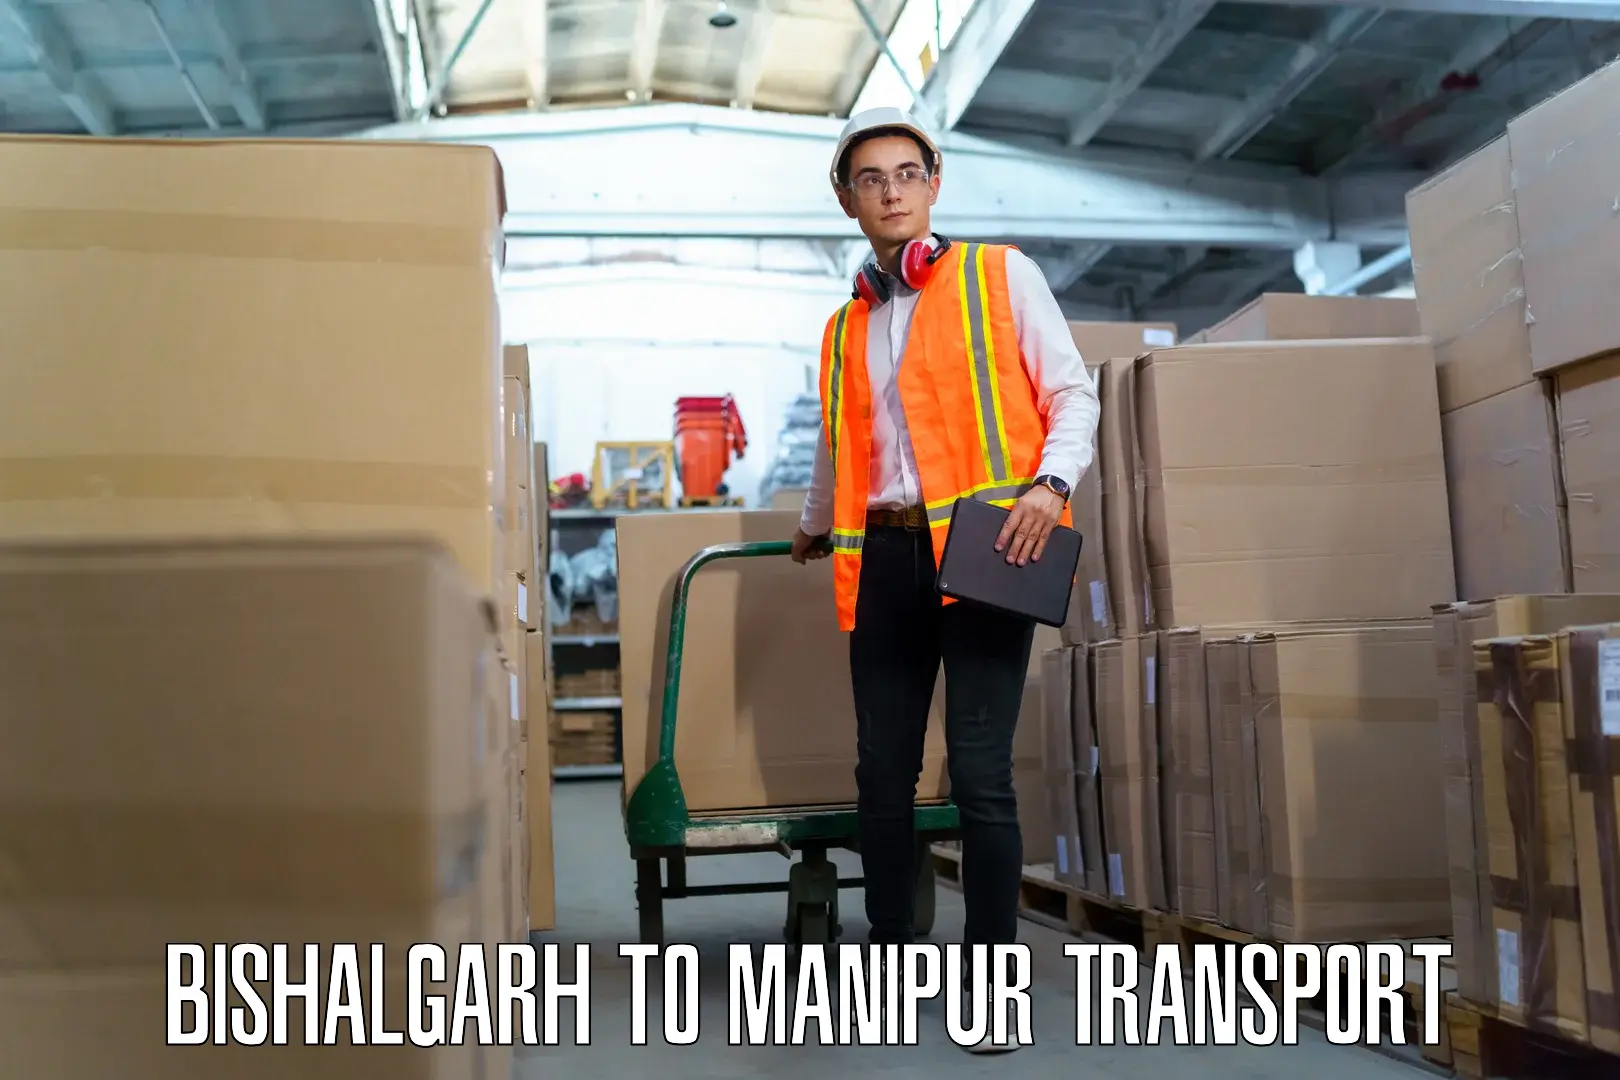 Furniture transport service Bishalgarh to Kakching